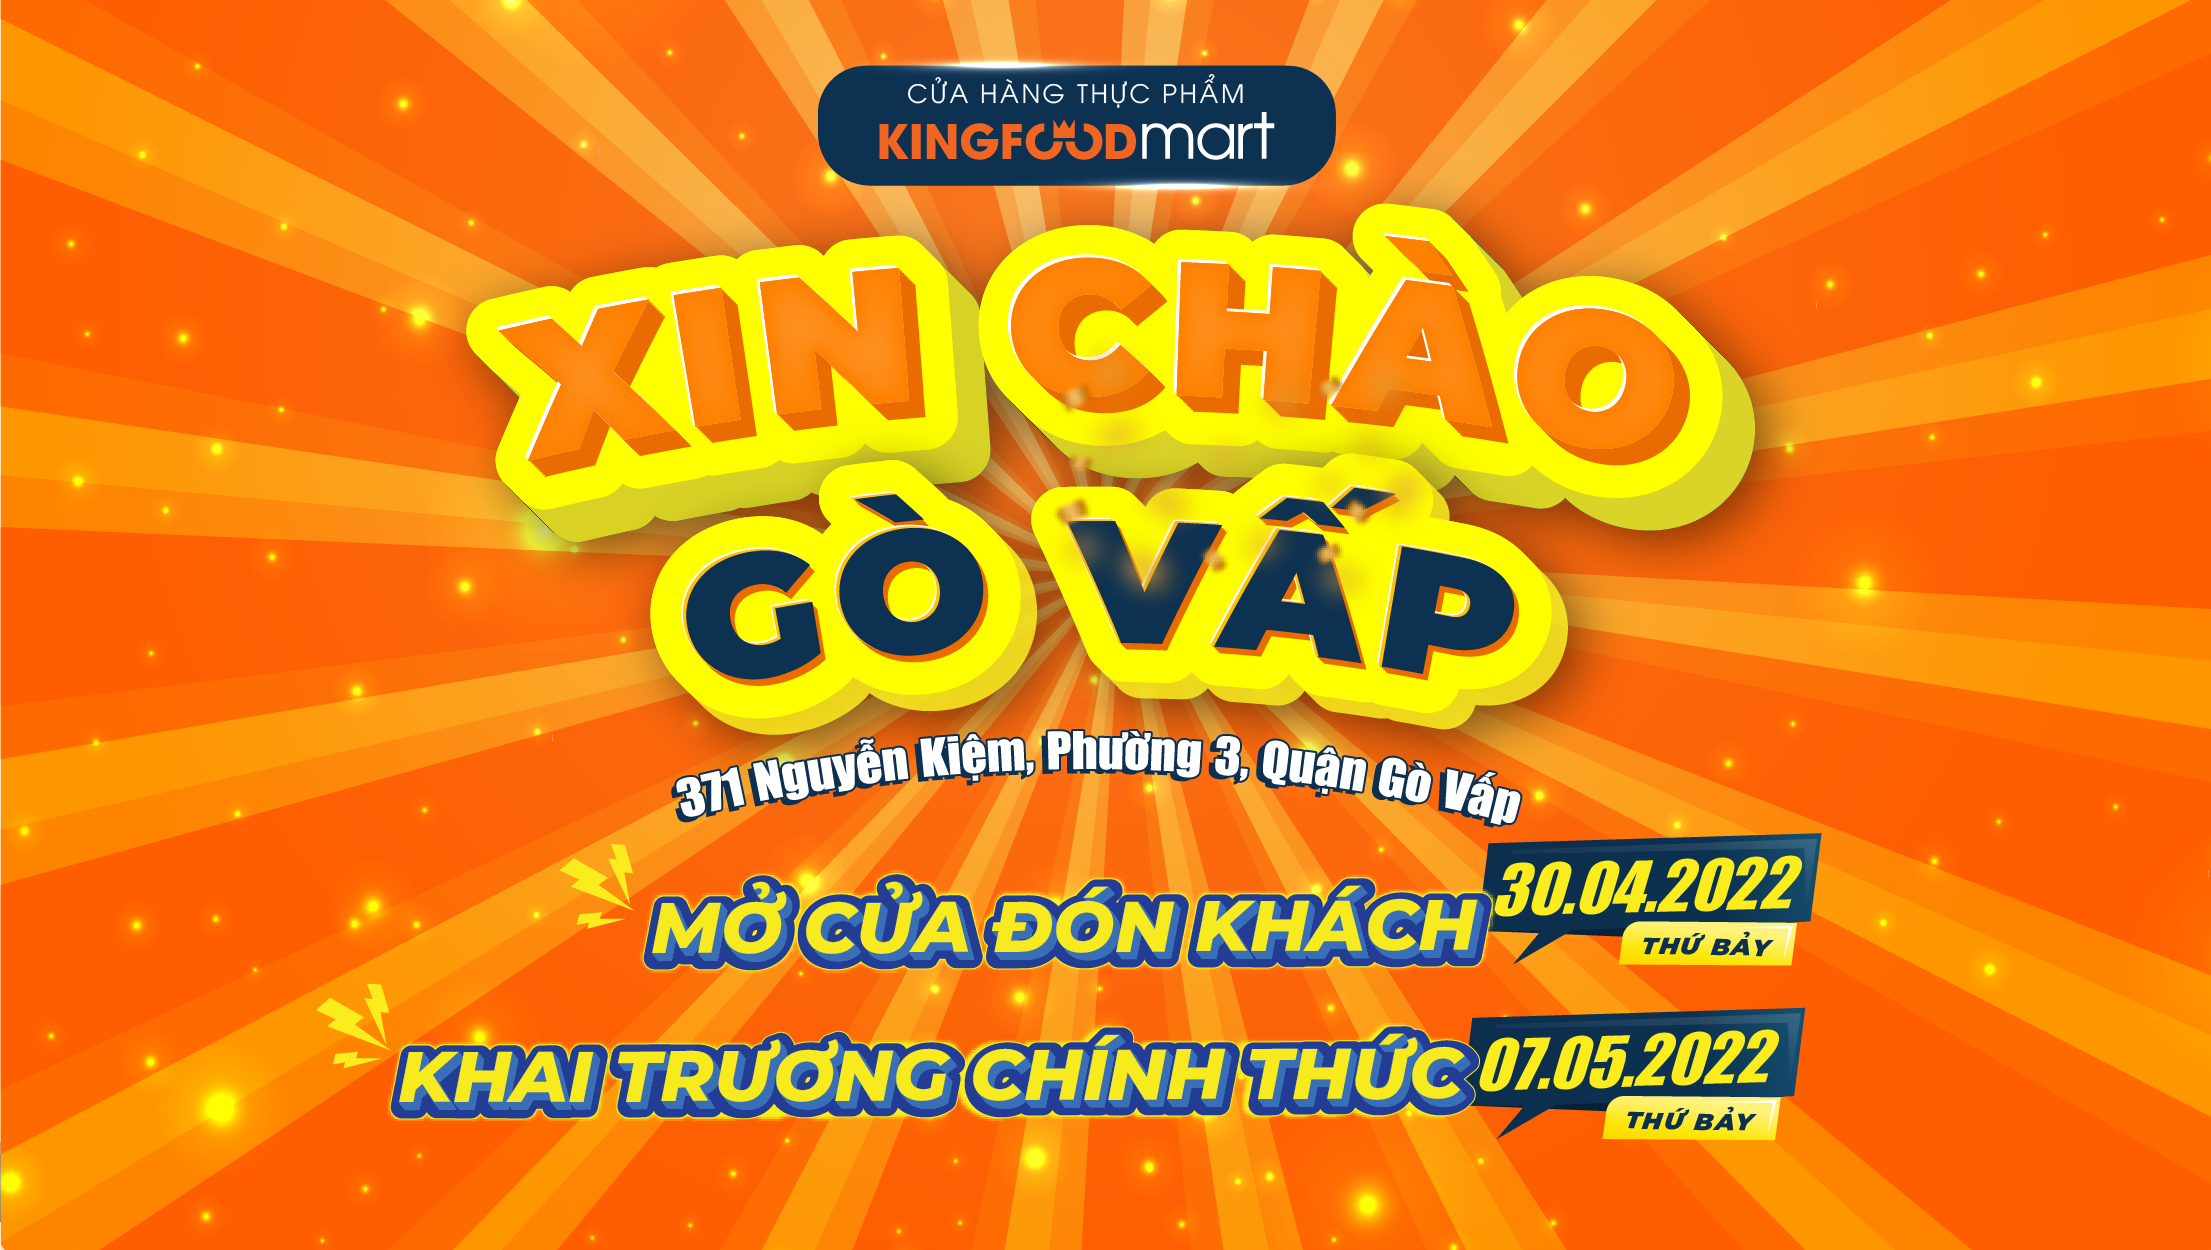 Ưu Đãi Xịn Mừng Khai Trương Kingfoodmart Nguyễn Kiệm